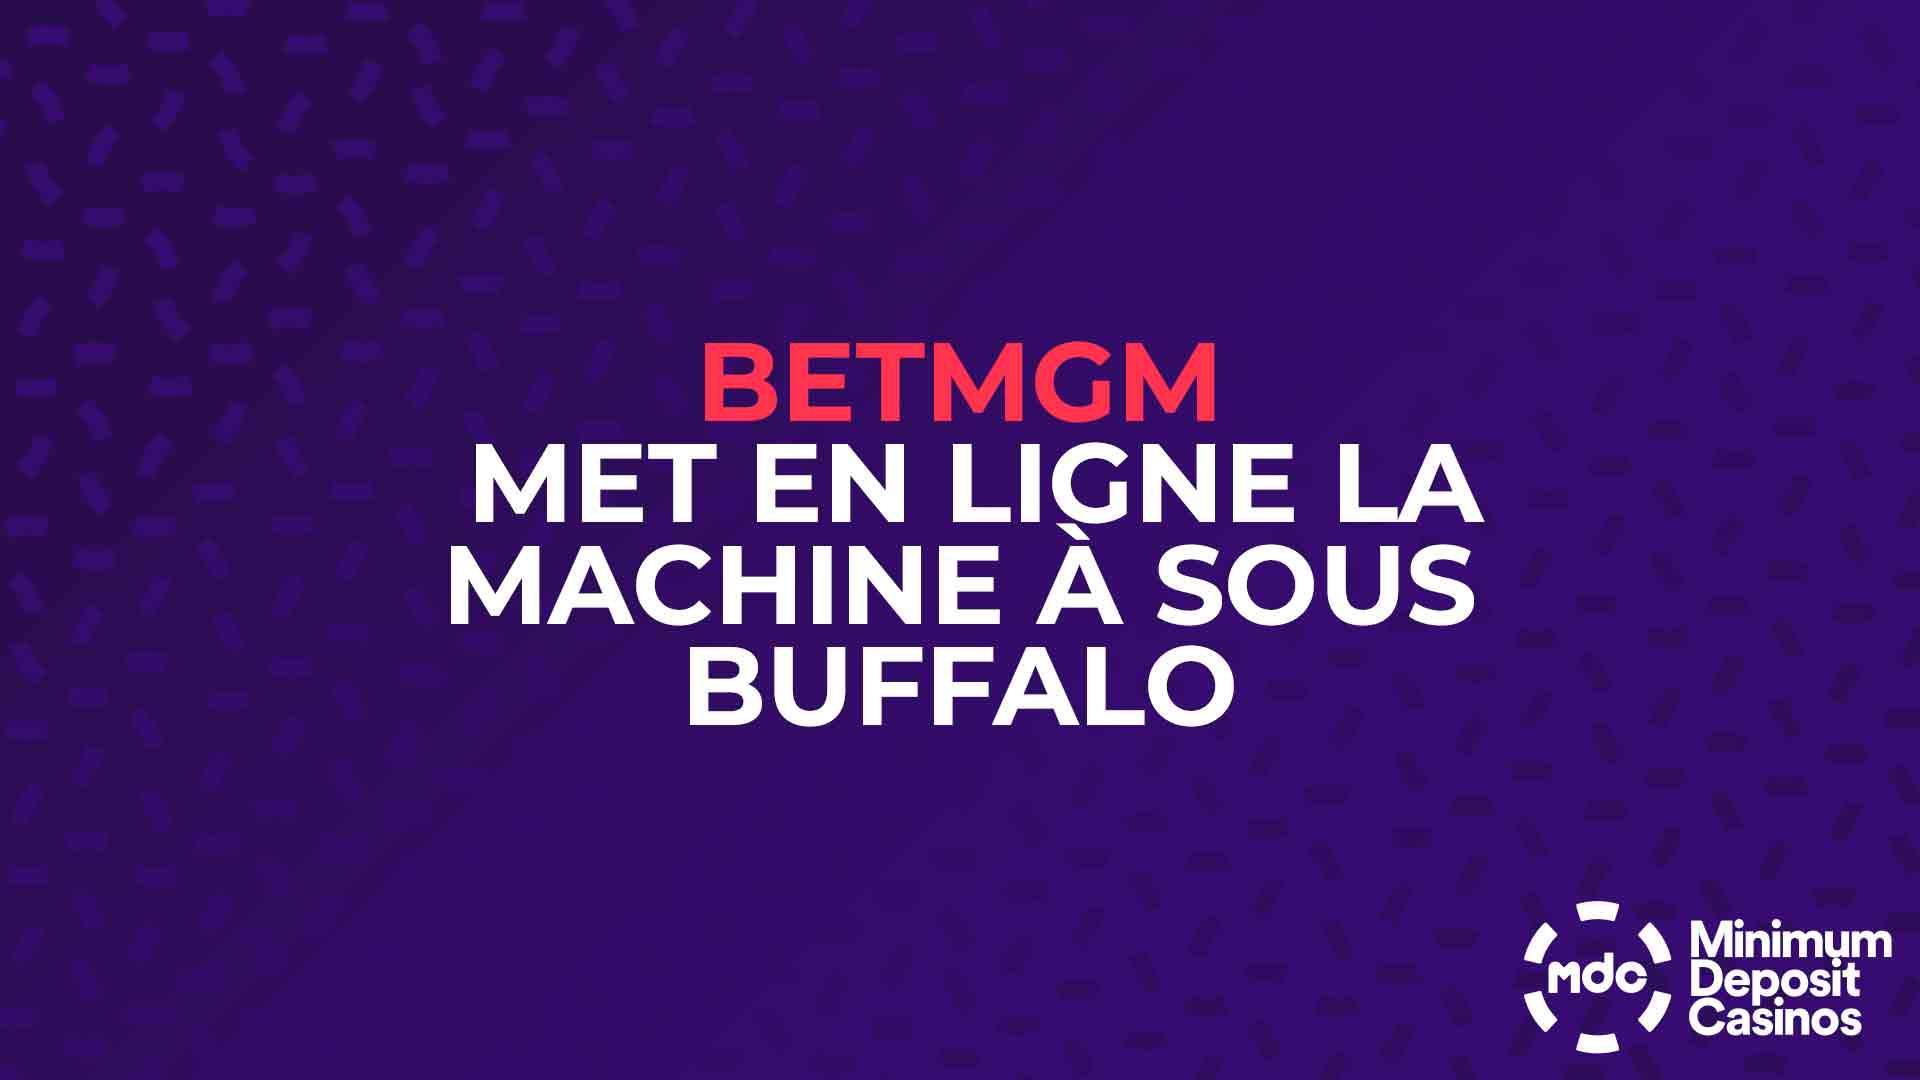 BetMGM met en ligne la machine à sous Buffalo